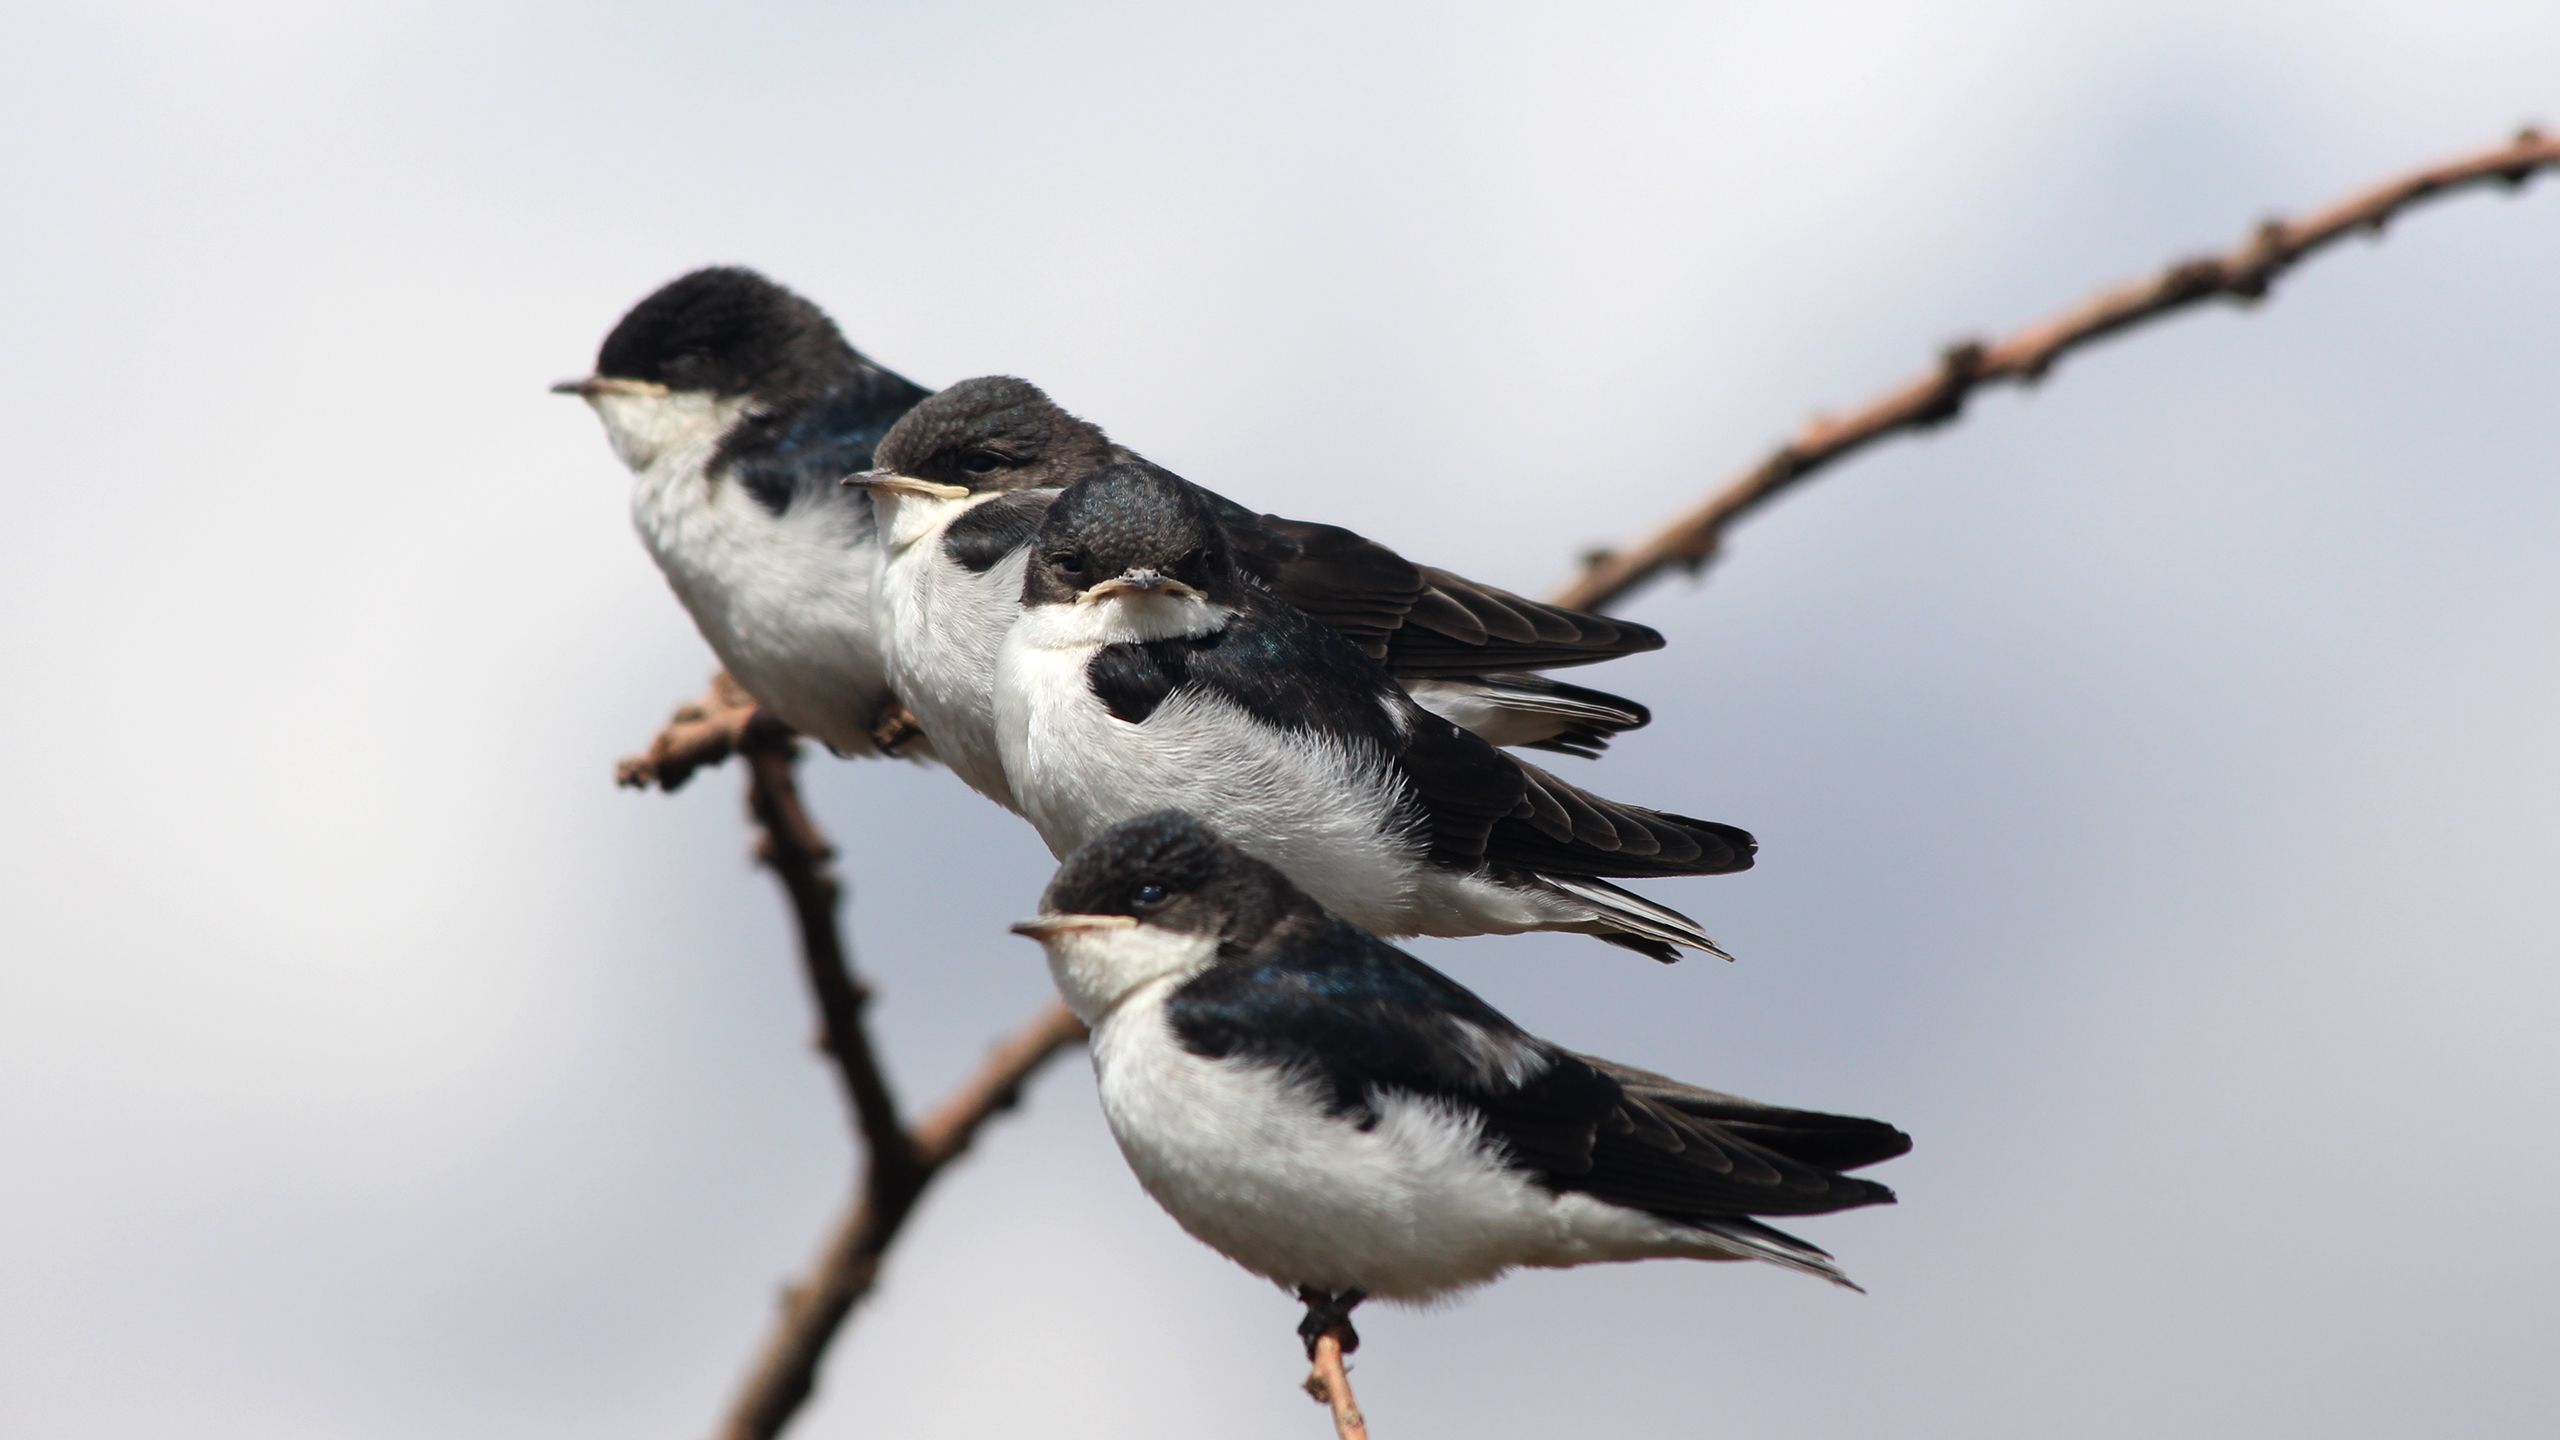 Juvenile White-tailed Swallows